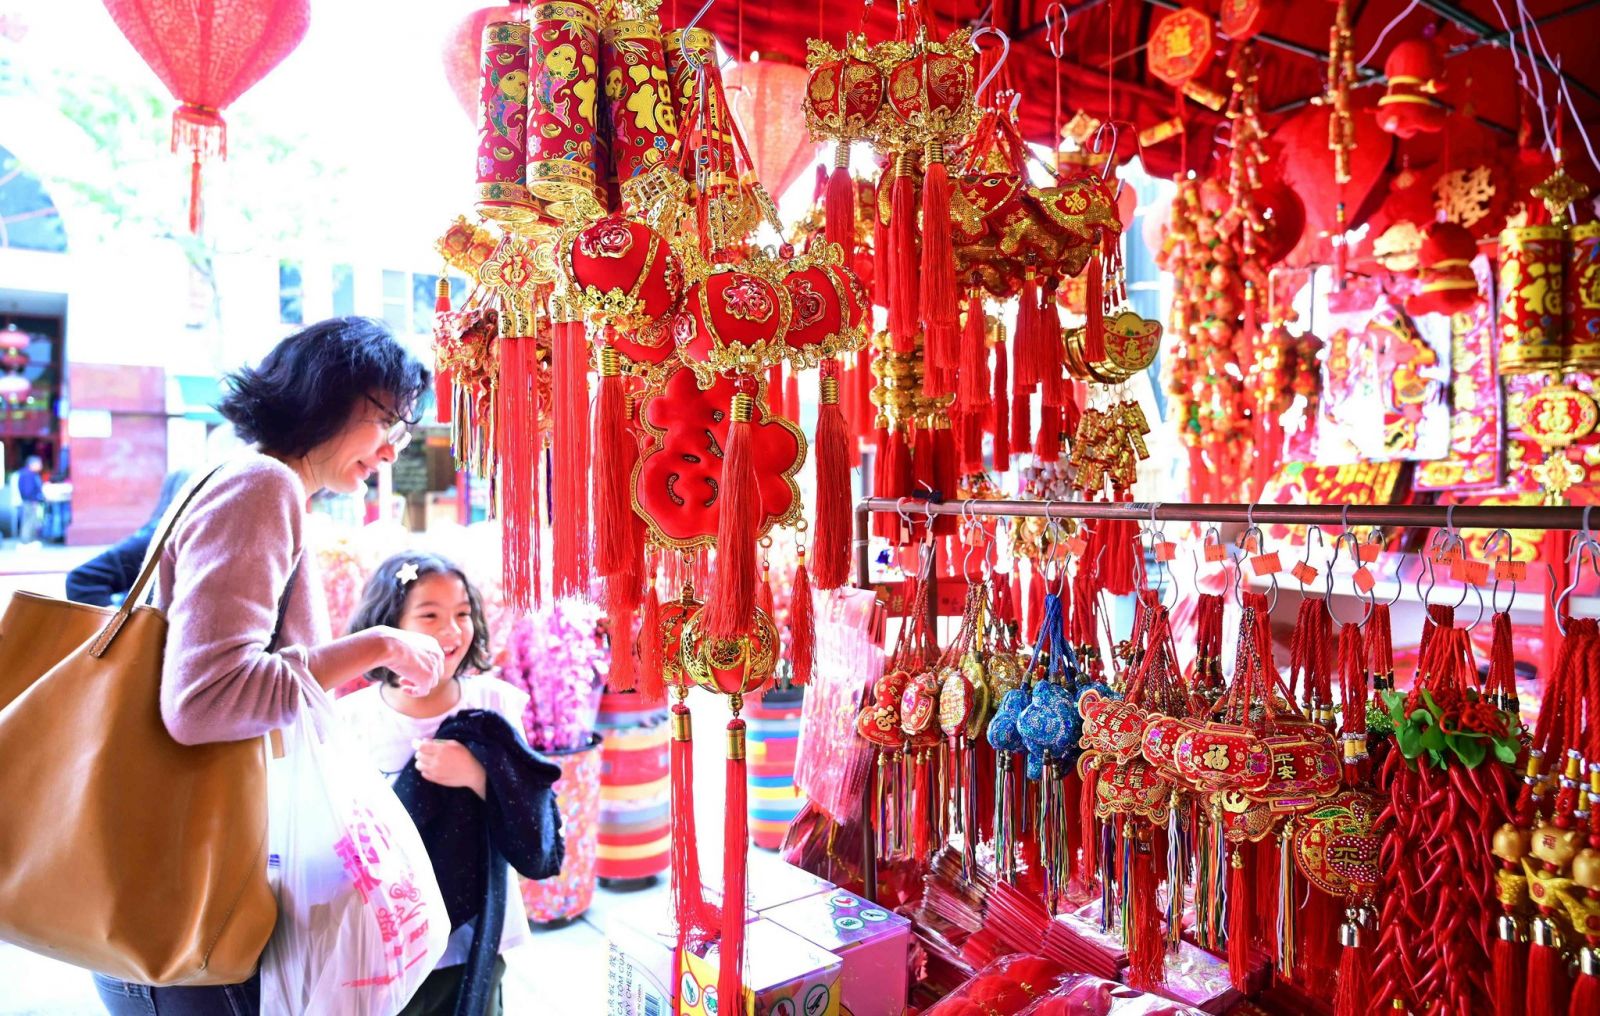 trong dịp lễ Tết Nguyên đán năm nay, toàn thành phố Hà Nội sẽ diễn ra rất nhiều sự kiện sôi động, hấp dẫn thu hút khách du lịch đến tham quan và trải nghiệm.